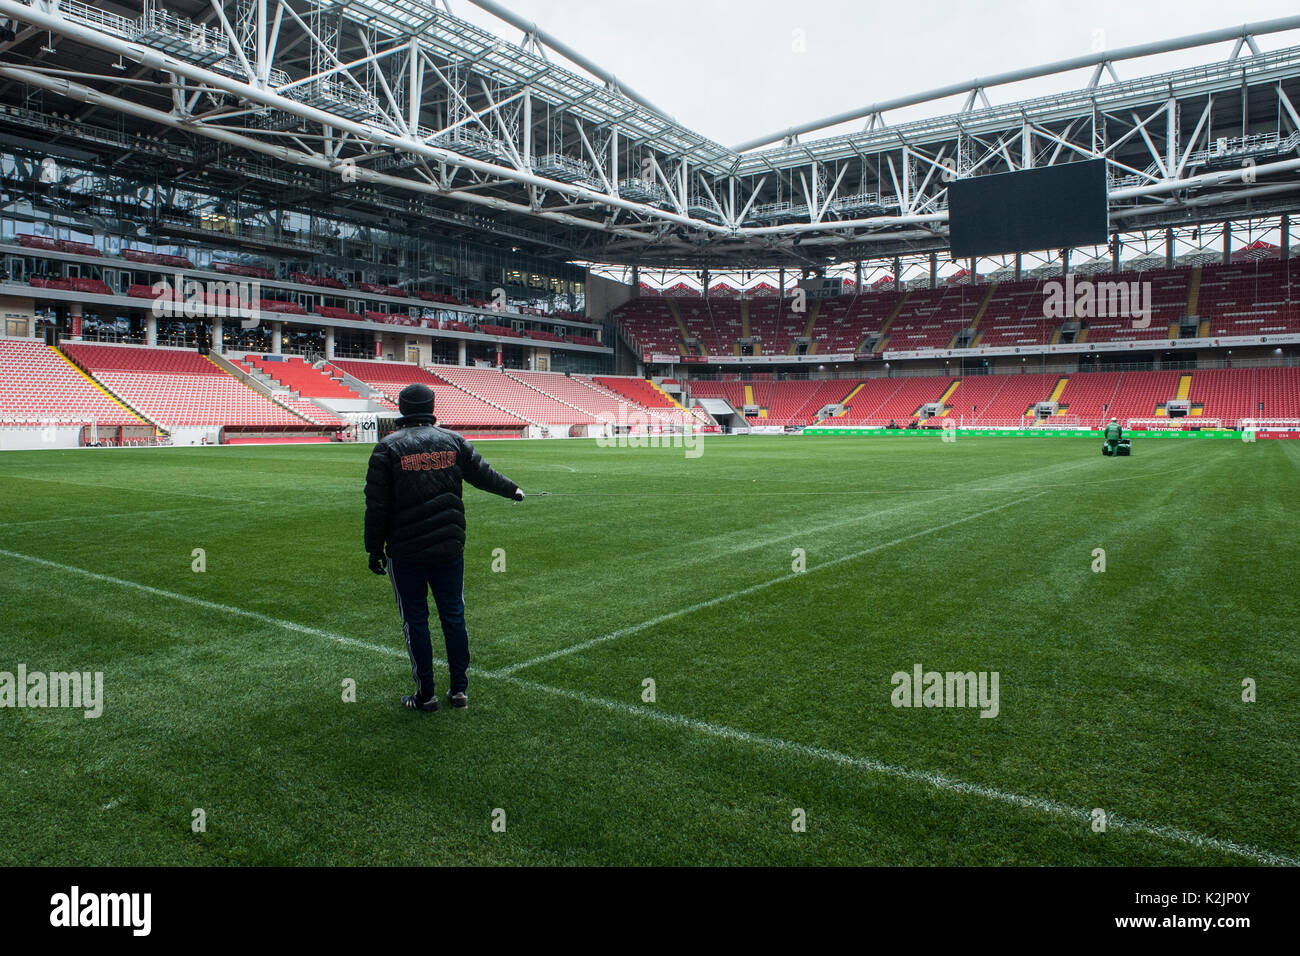 Le Spartak de Moscou Otkrytie homeground Arena/Spartak Stadium, sera utilisée pour la worldcup. Construction et rénovation des stades de football en Russie est une course contre la montre que la Russie est l'hôte de la Coupe du Monde FIFA 2018 en juin et juillet 2018. Banque D'Images